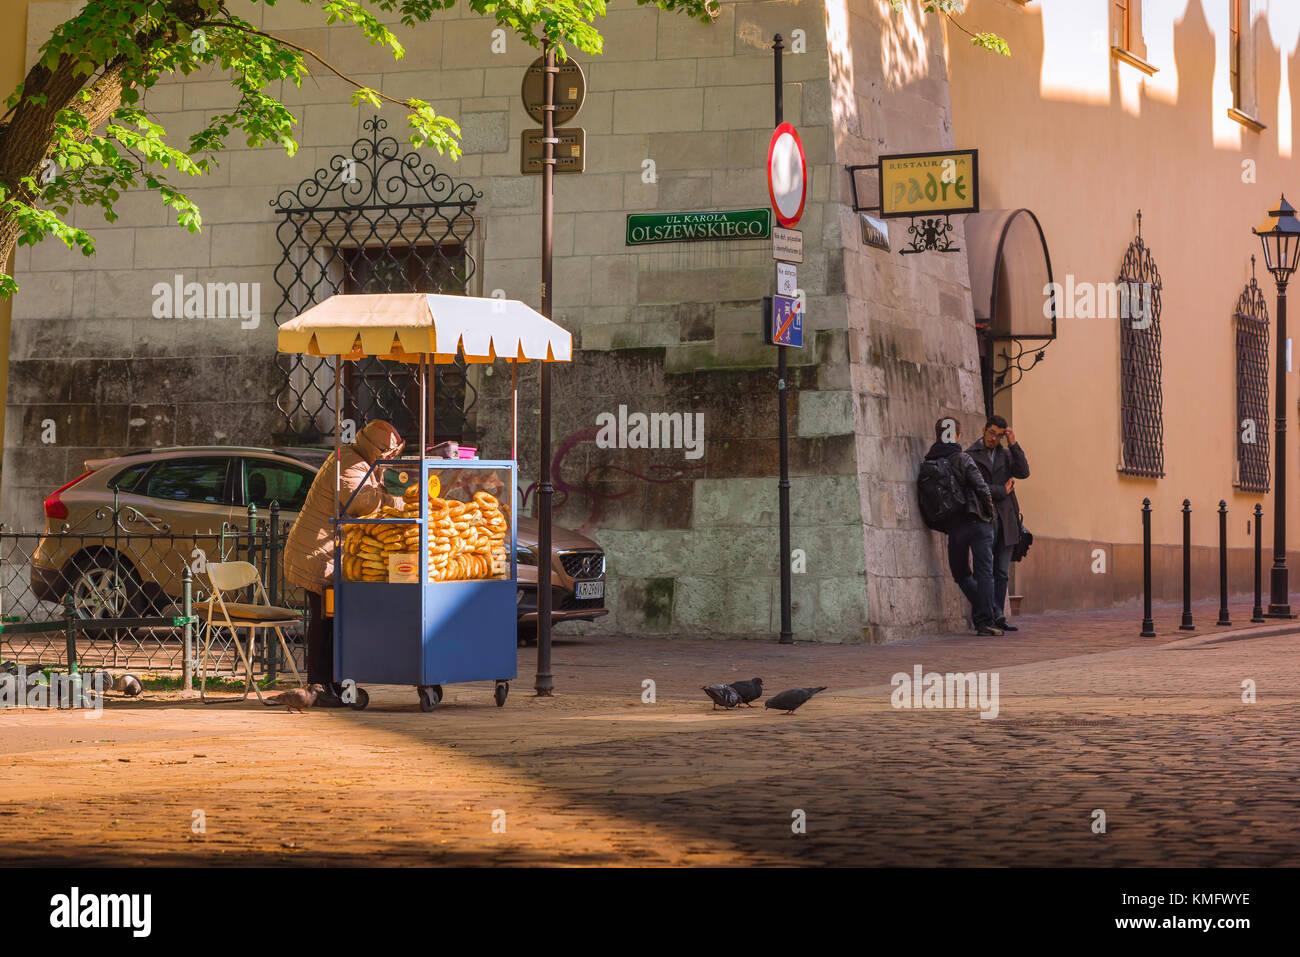 Cibo di strada in Polonia, vista di un venditore che prepara il suo stand pretzel in una piazza nella zona centrale della città vecchia di Cracovia, Polonia. Foto Stock